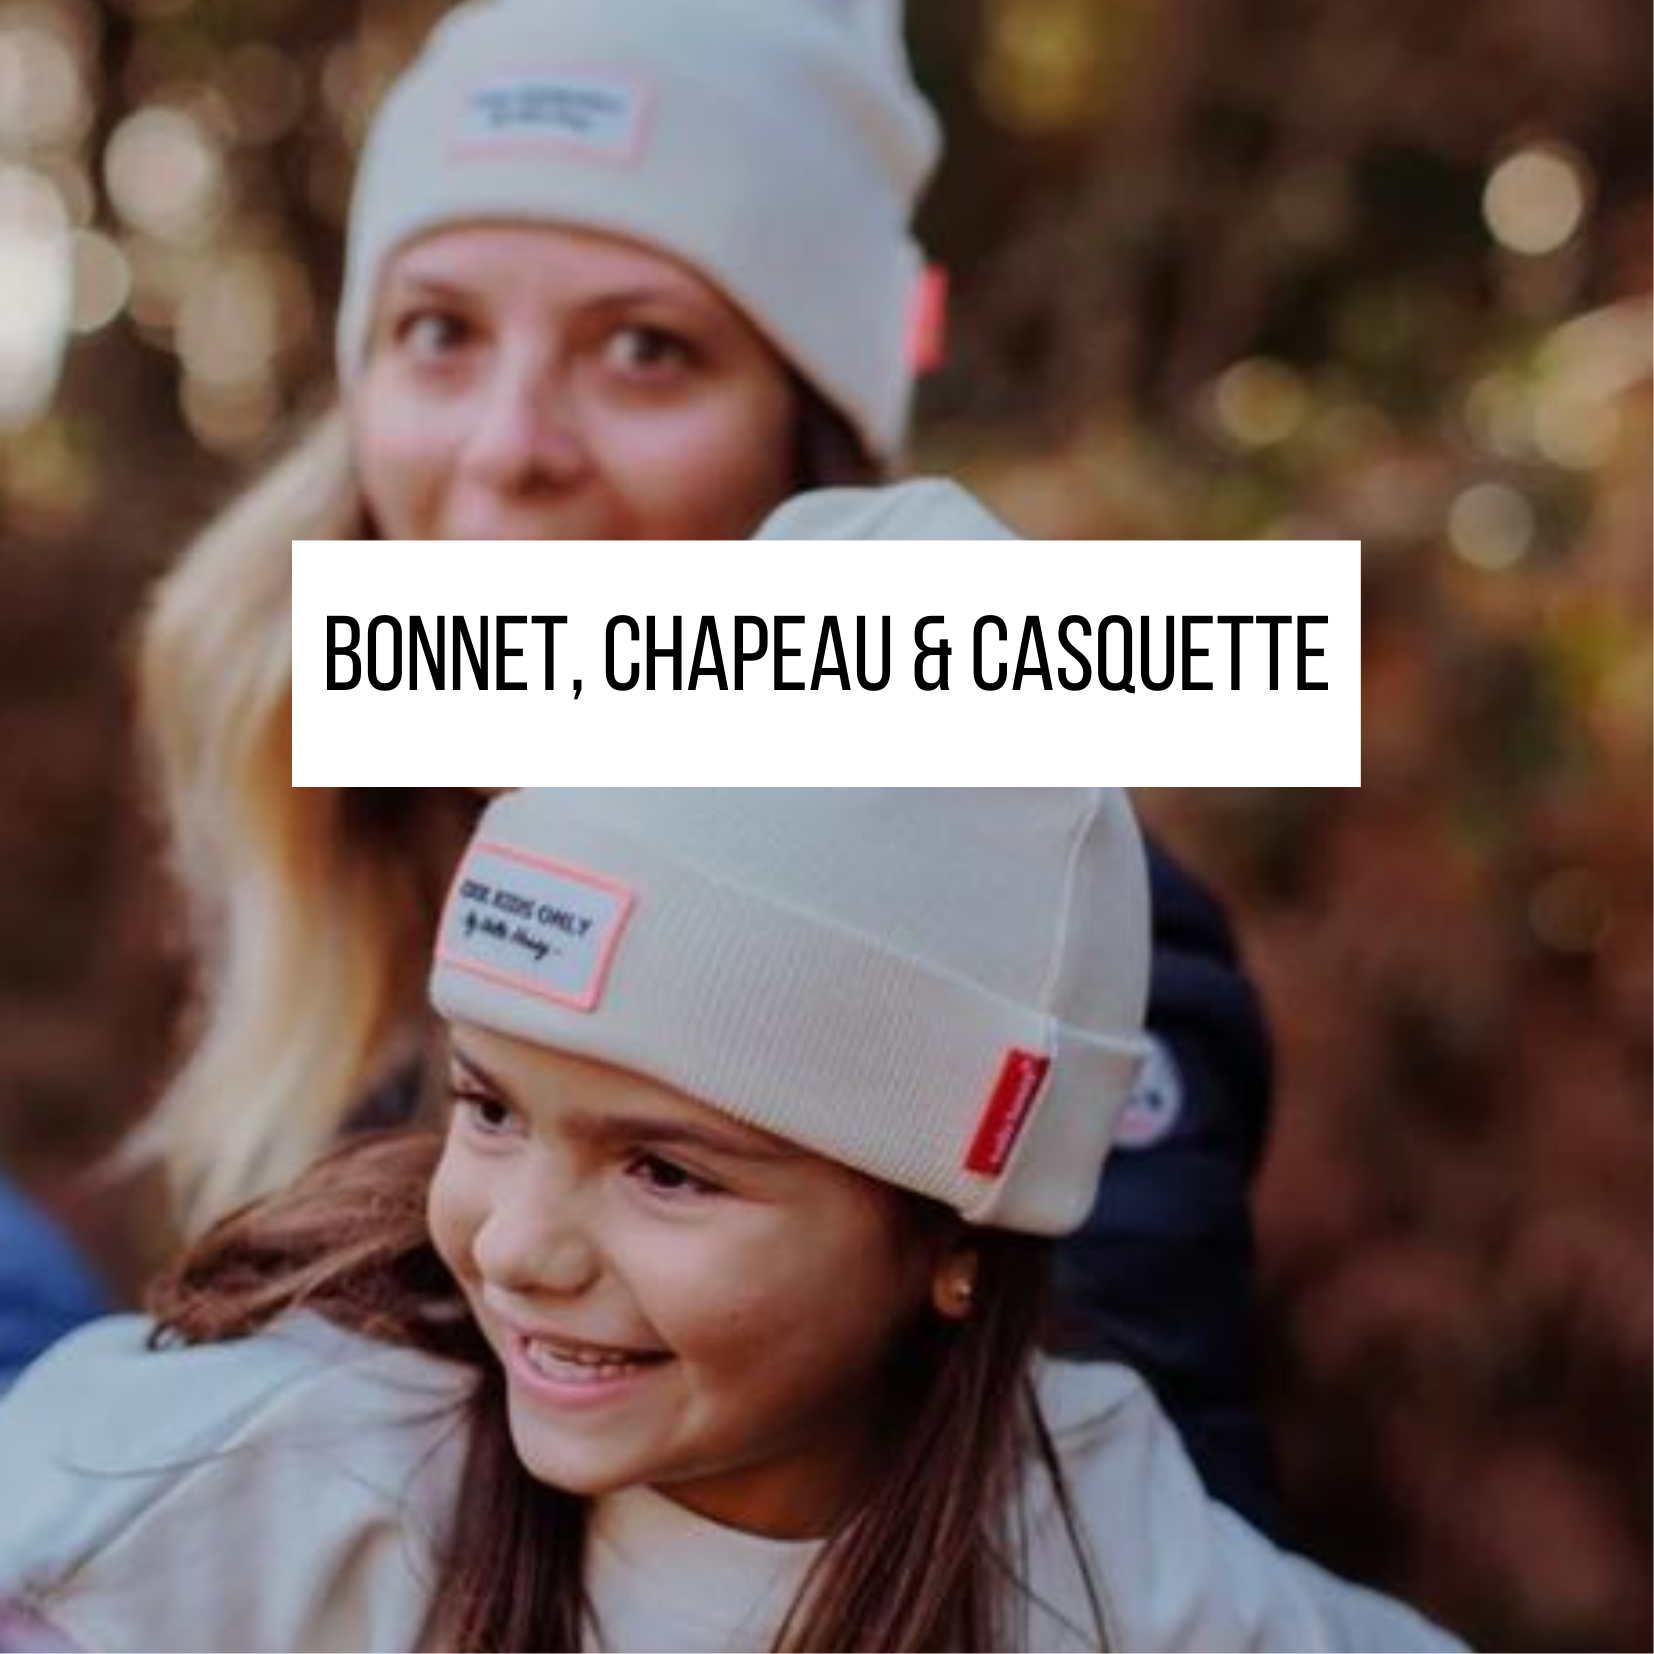 BONNET CHAPEAU CASQUETTE HELLO HOSSY ENFANT FAMILLE COOL KIDS PARENT